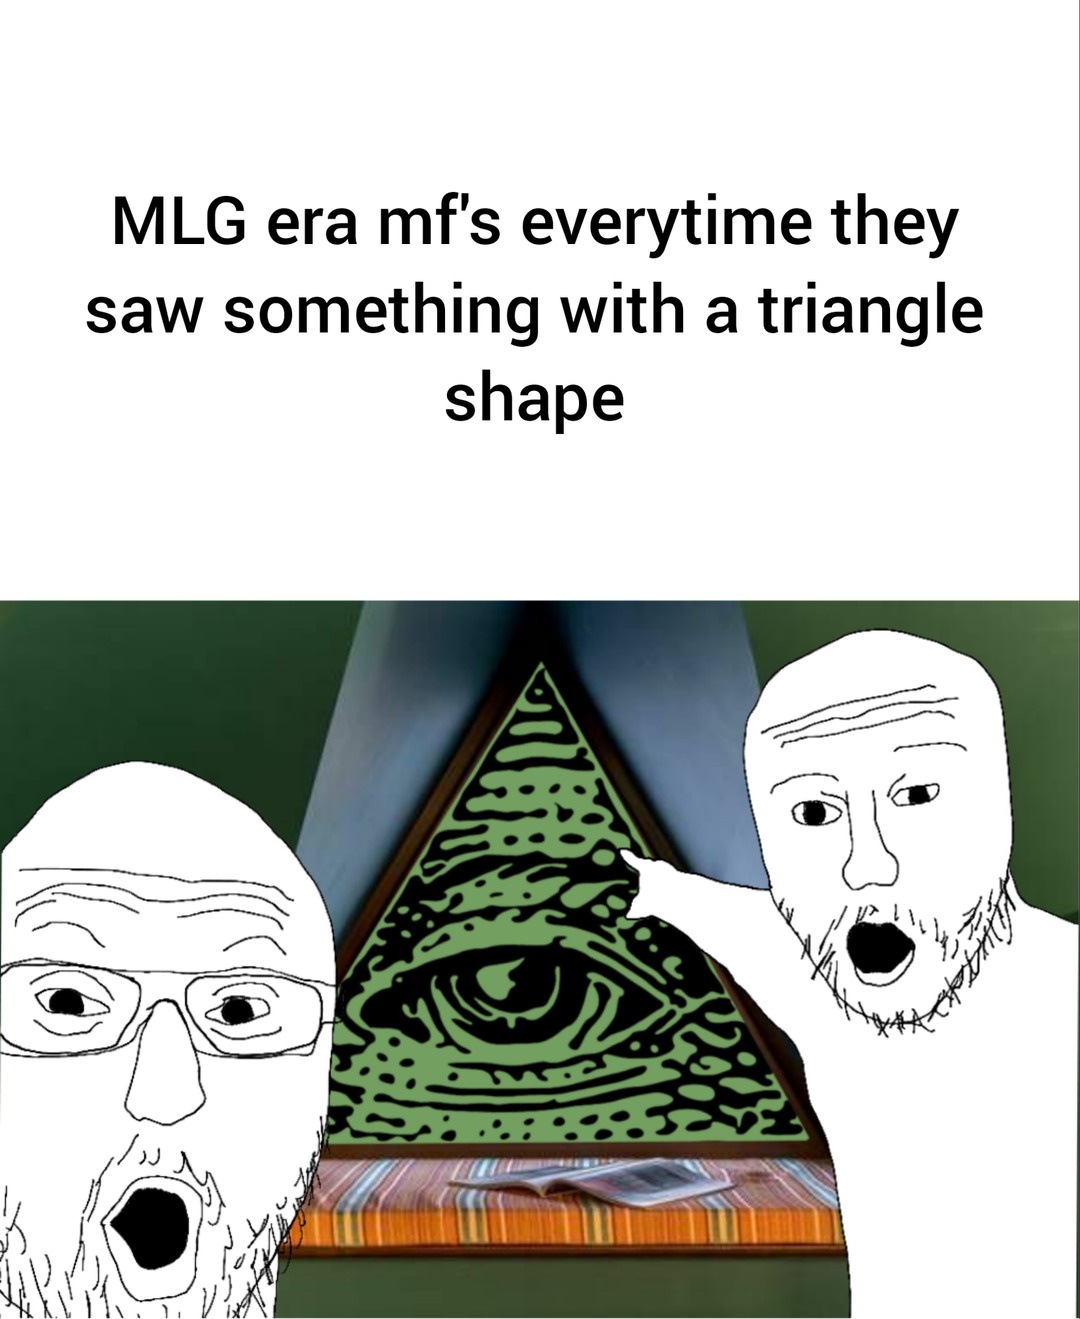 Haha, Illuminati confirmed!!!!111 - meme